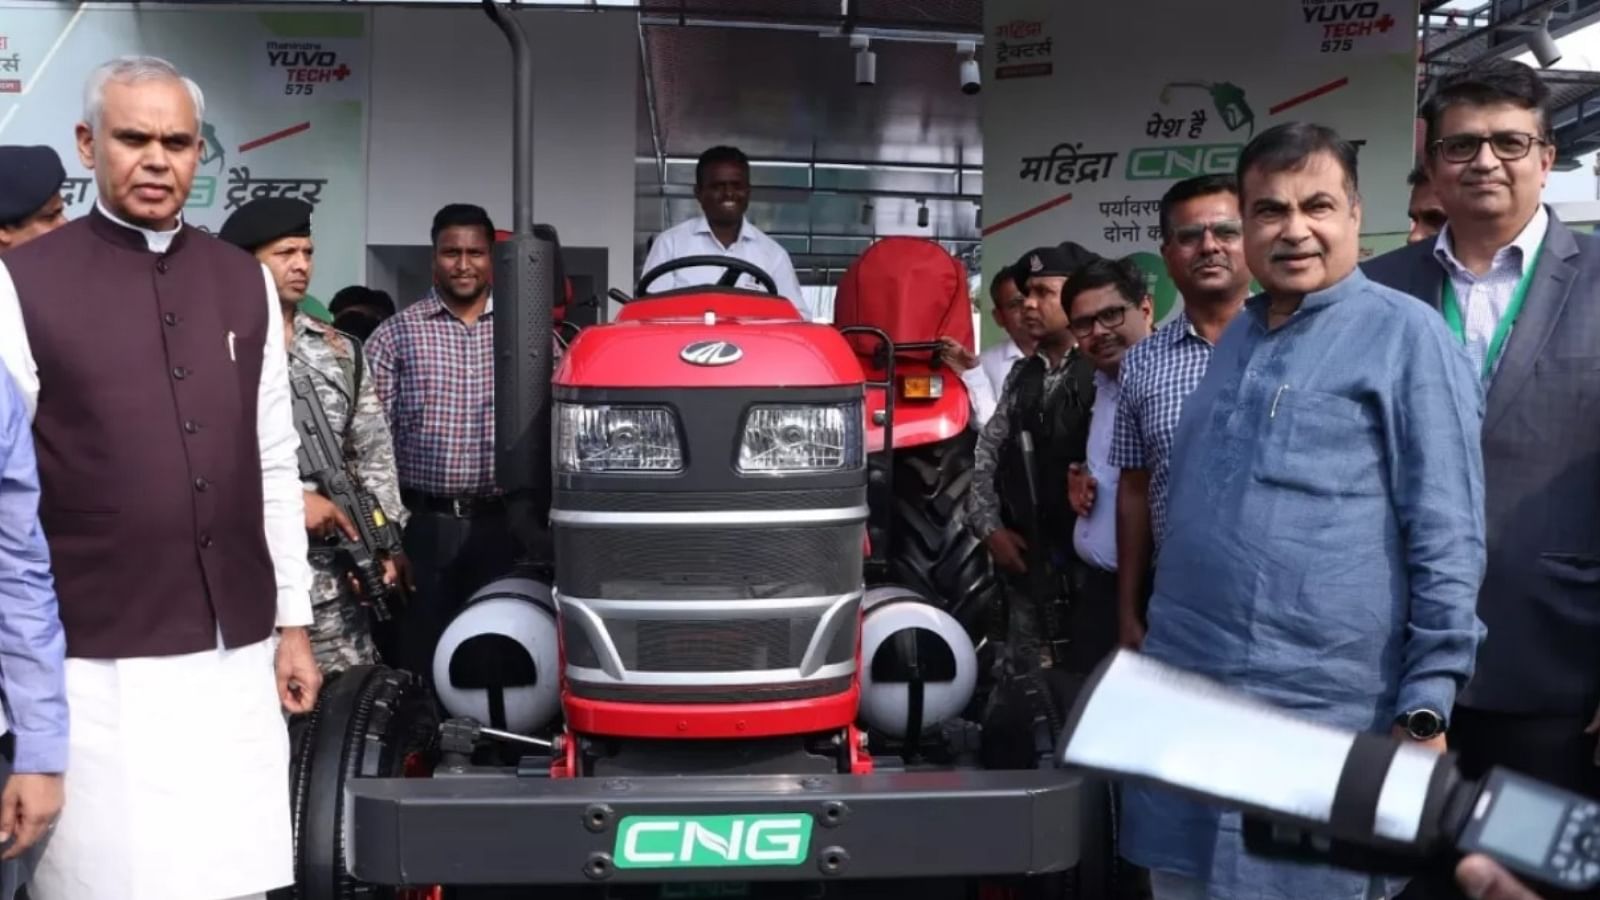 नागपुर के एग्रोविजन में महिंद्रा के सीएनजी ट्रैक्टर को लांच करते केंद्रीय मंत्री नितिन गडकरी।